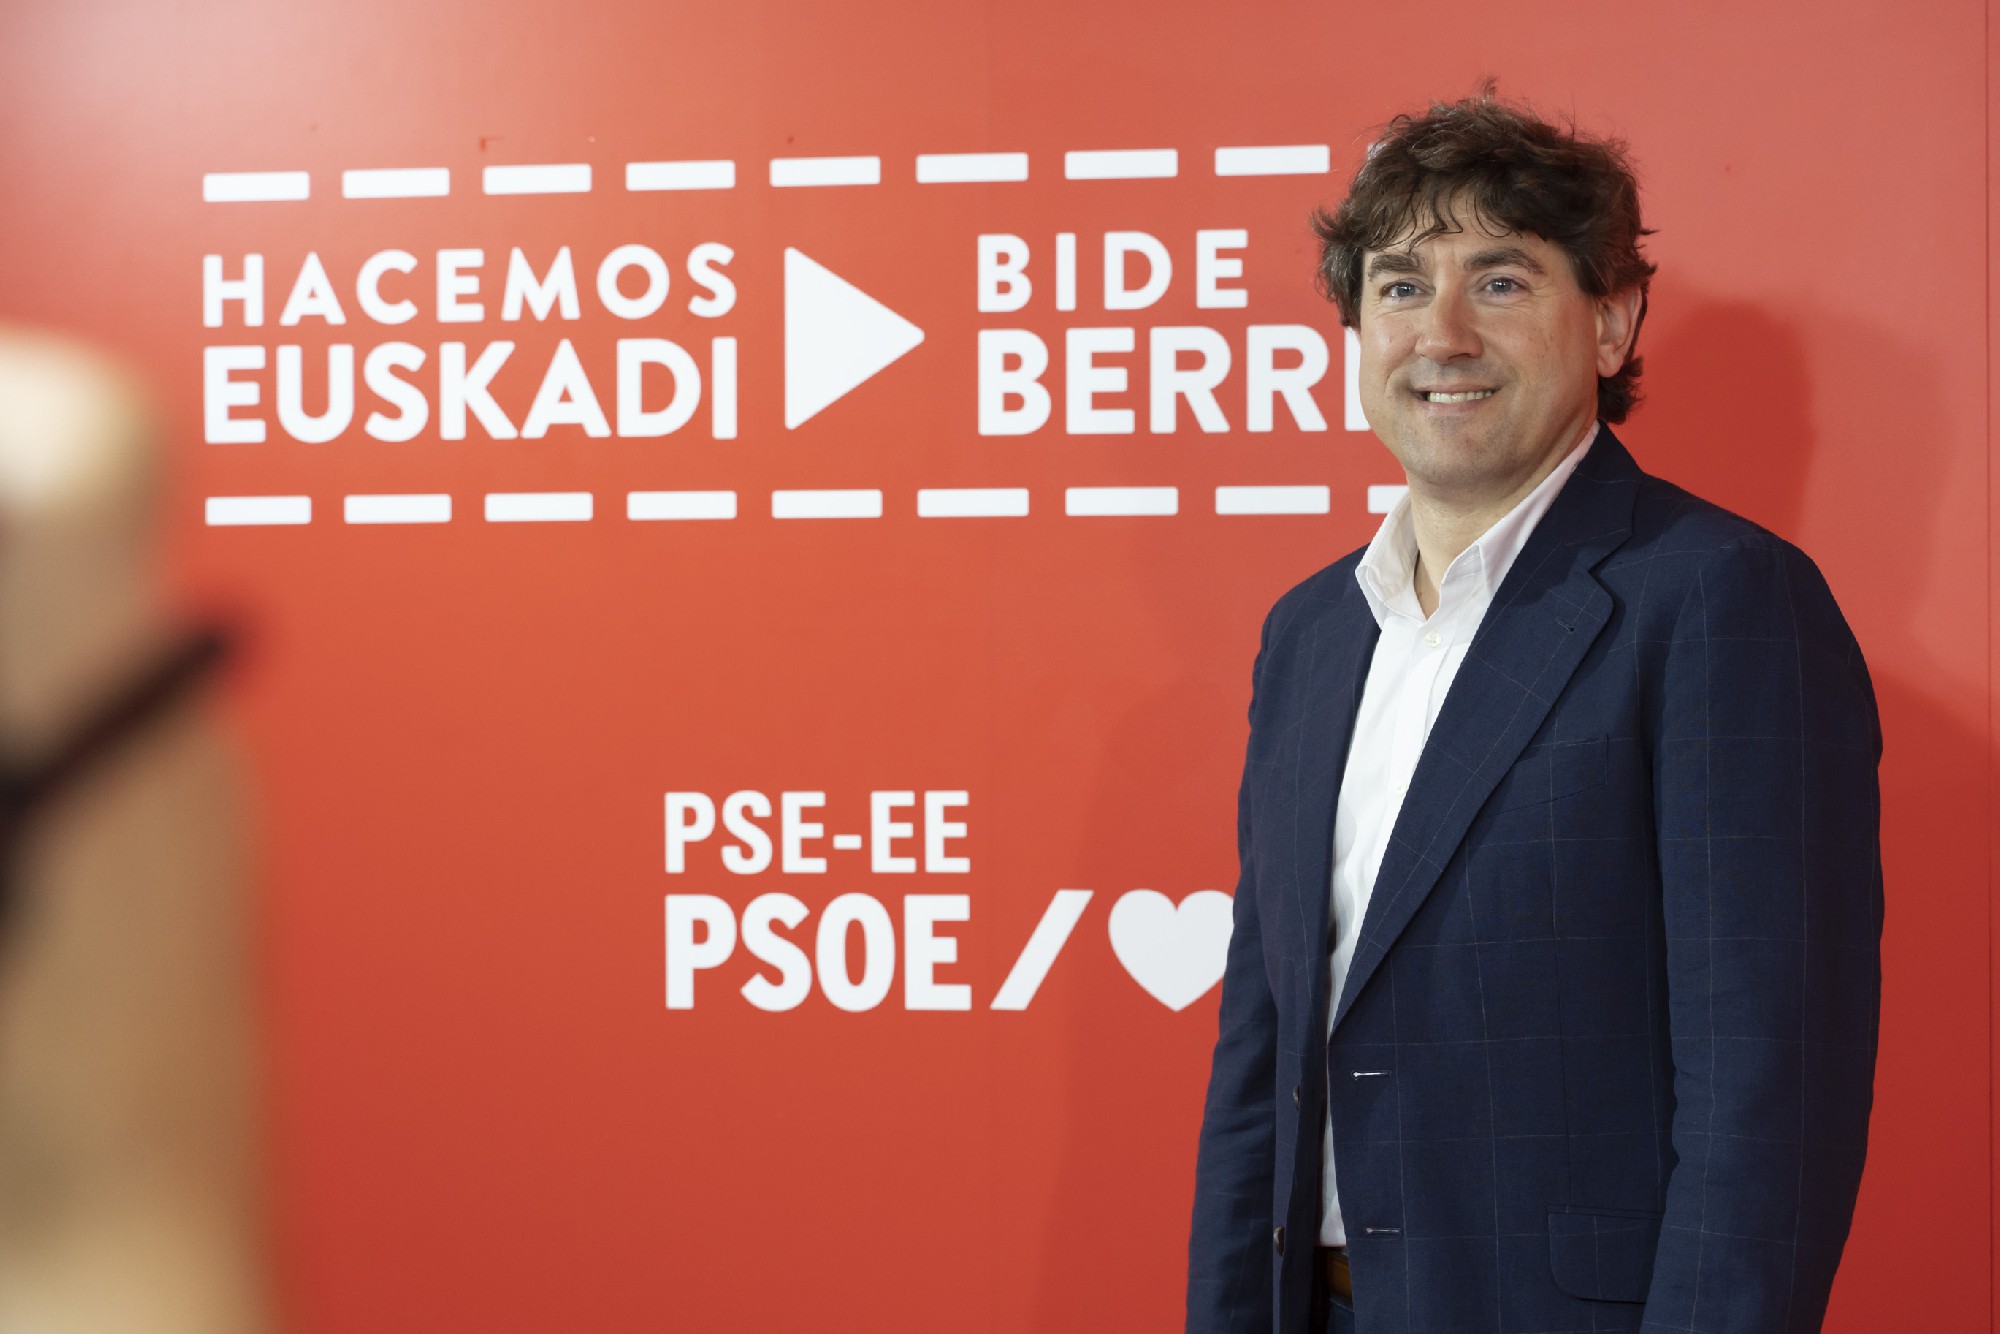 Eneko Andueza presenta las jornadas "Hacemos Euskadi. Bide Berria" | Foto: Socialistas Vascos